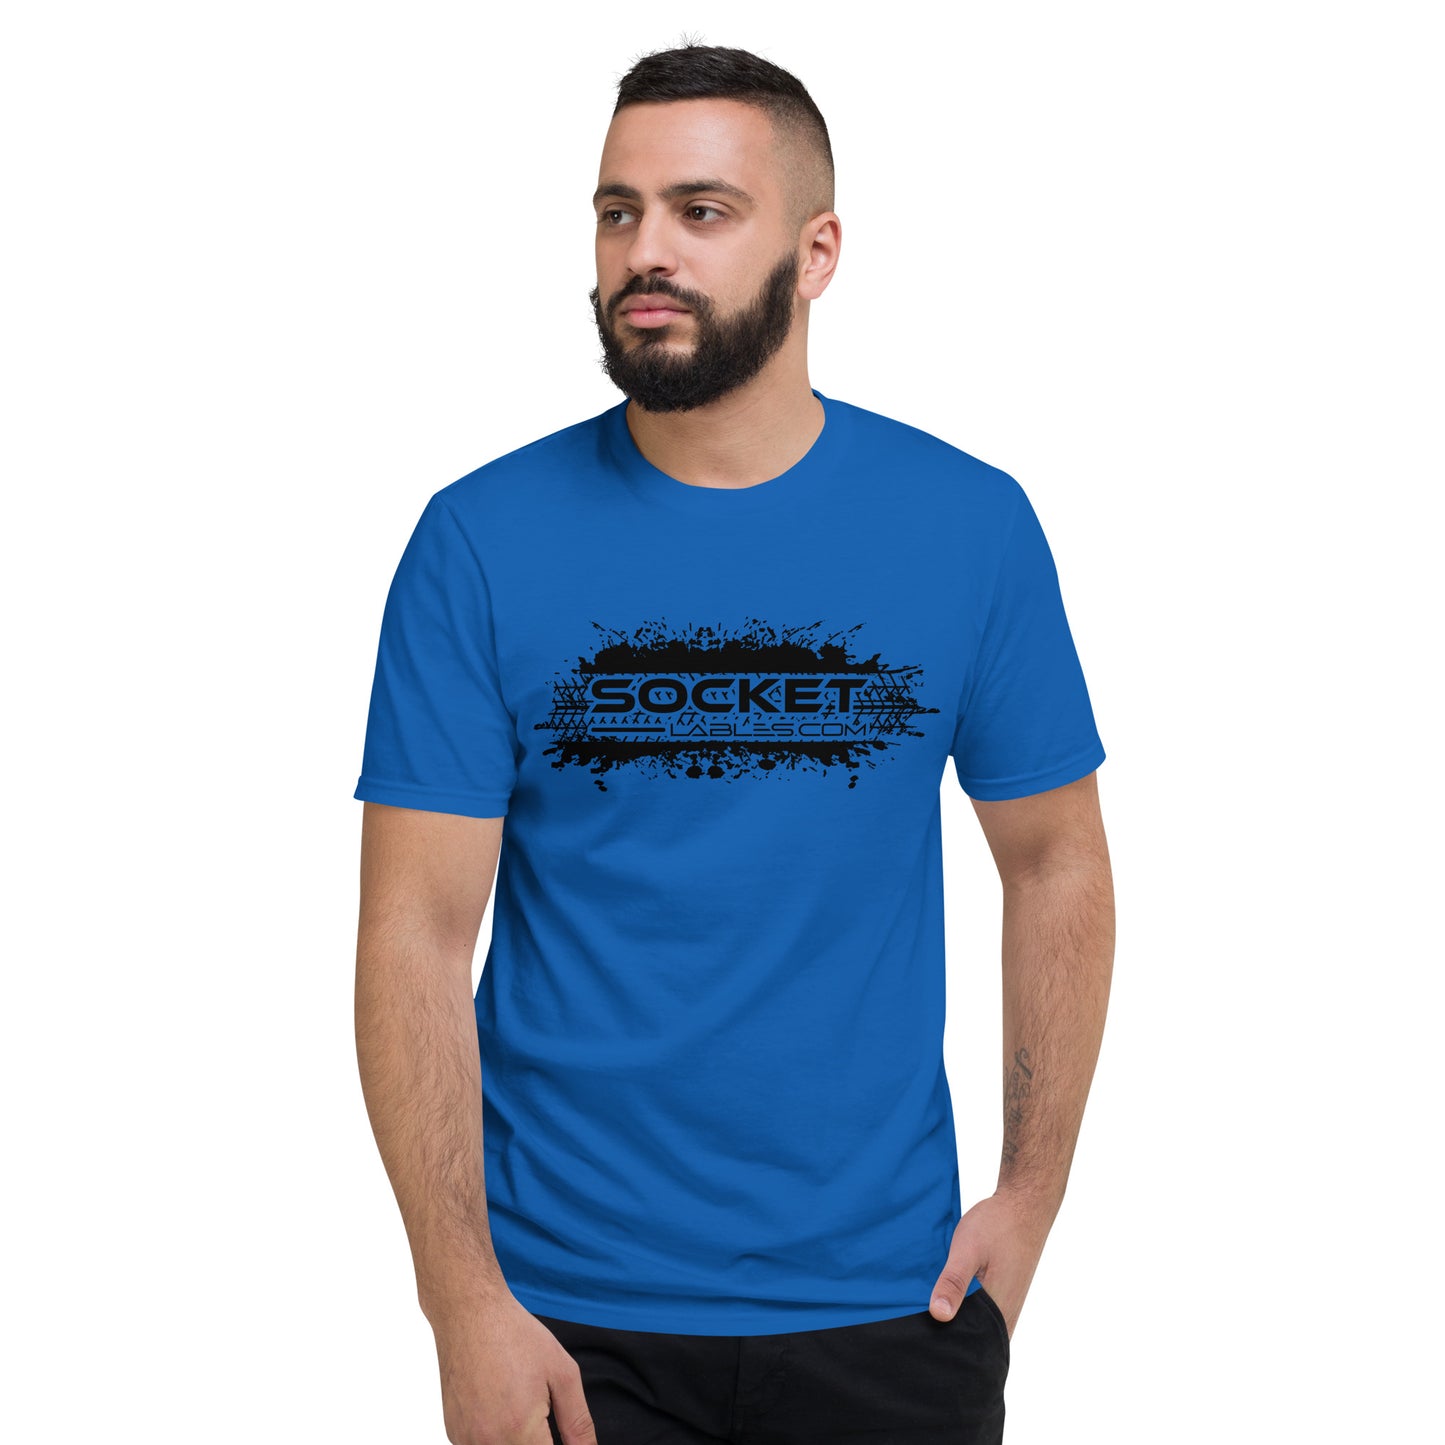 Socket Labels.com T-Shirt